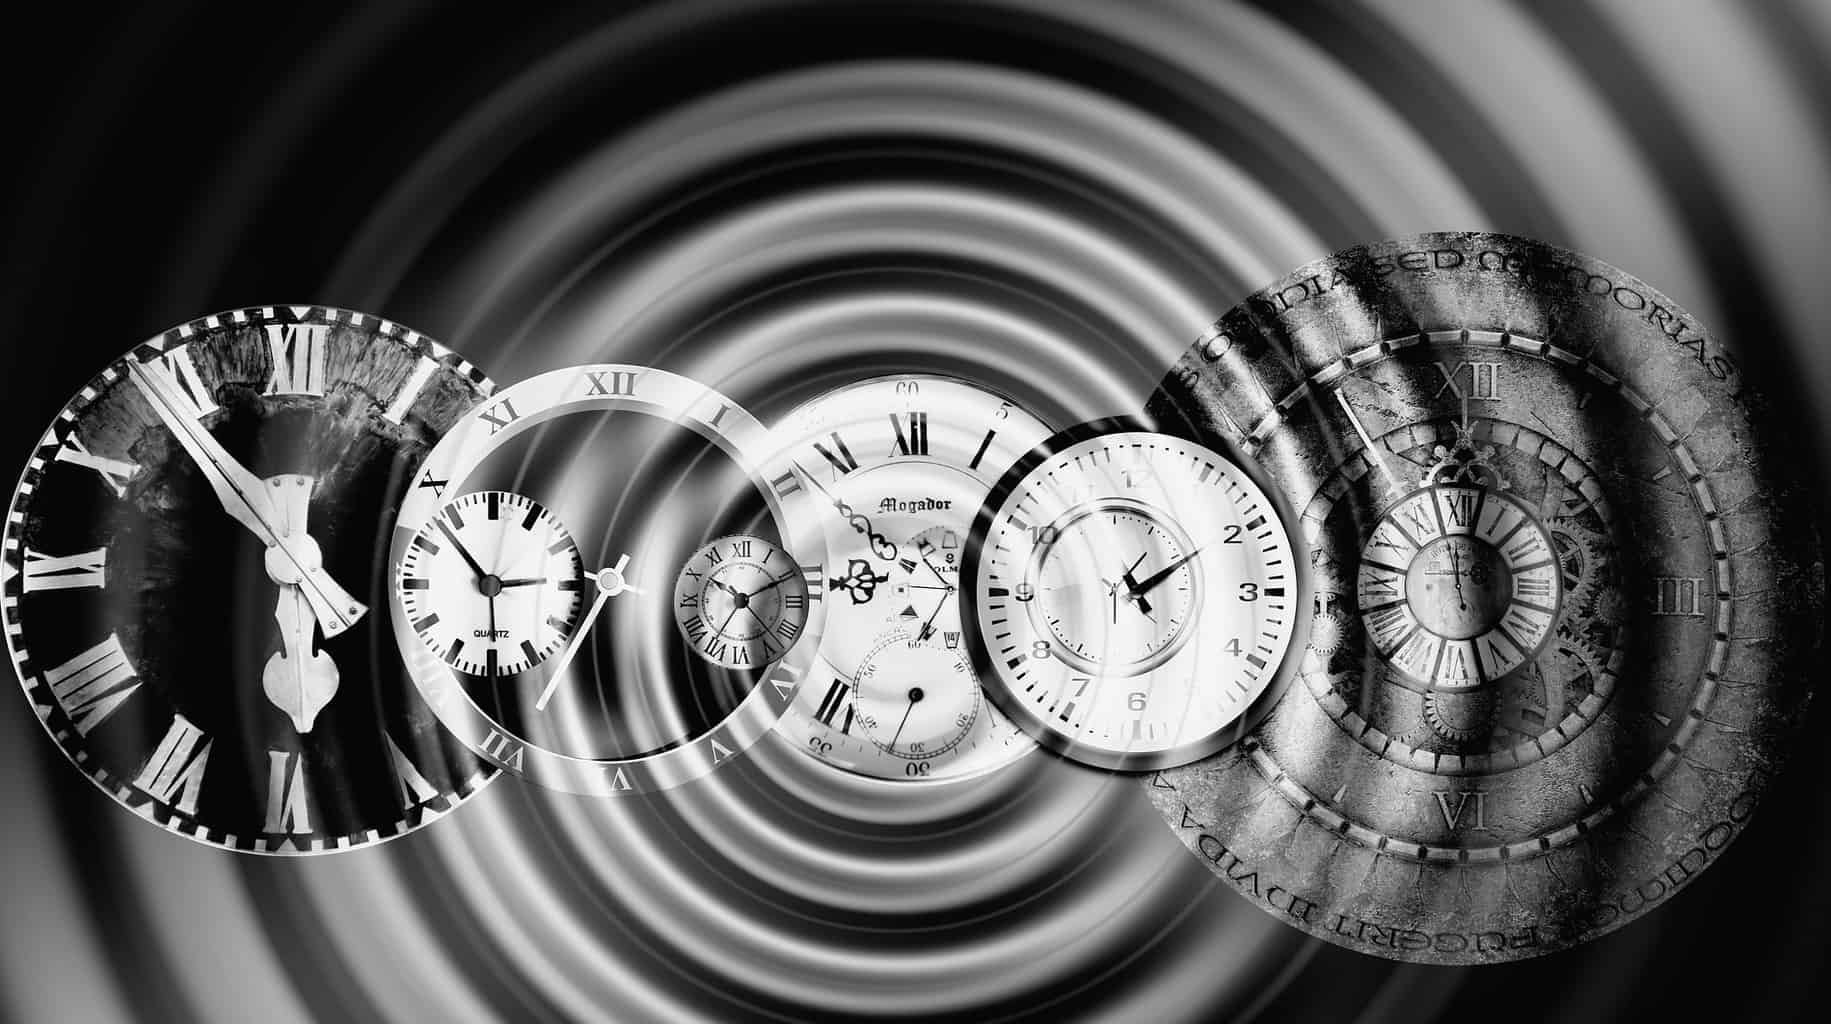 Изучение путешествие во времени. Путешествие во времени. Часы "путешествие во времени". Прибор для перемещения во времени. Путешествие во времени арт.